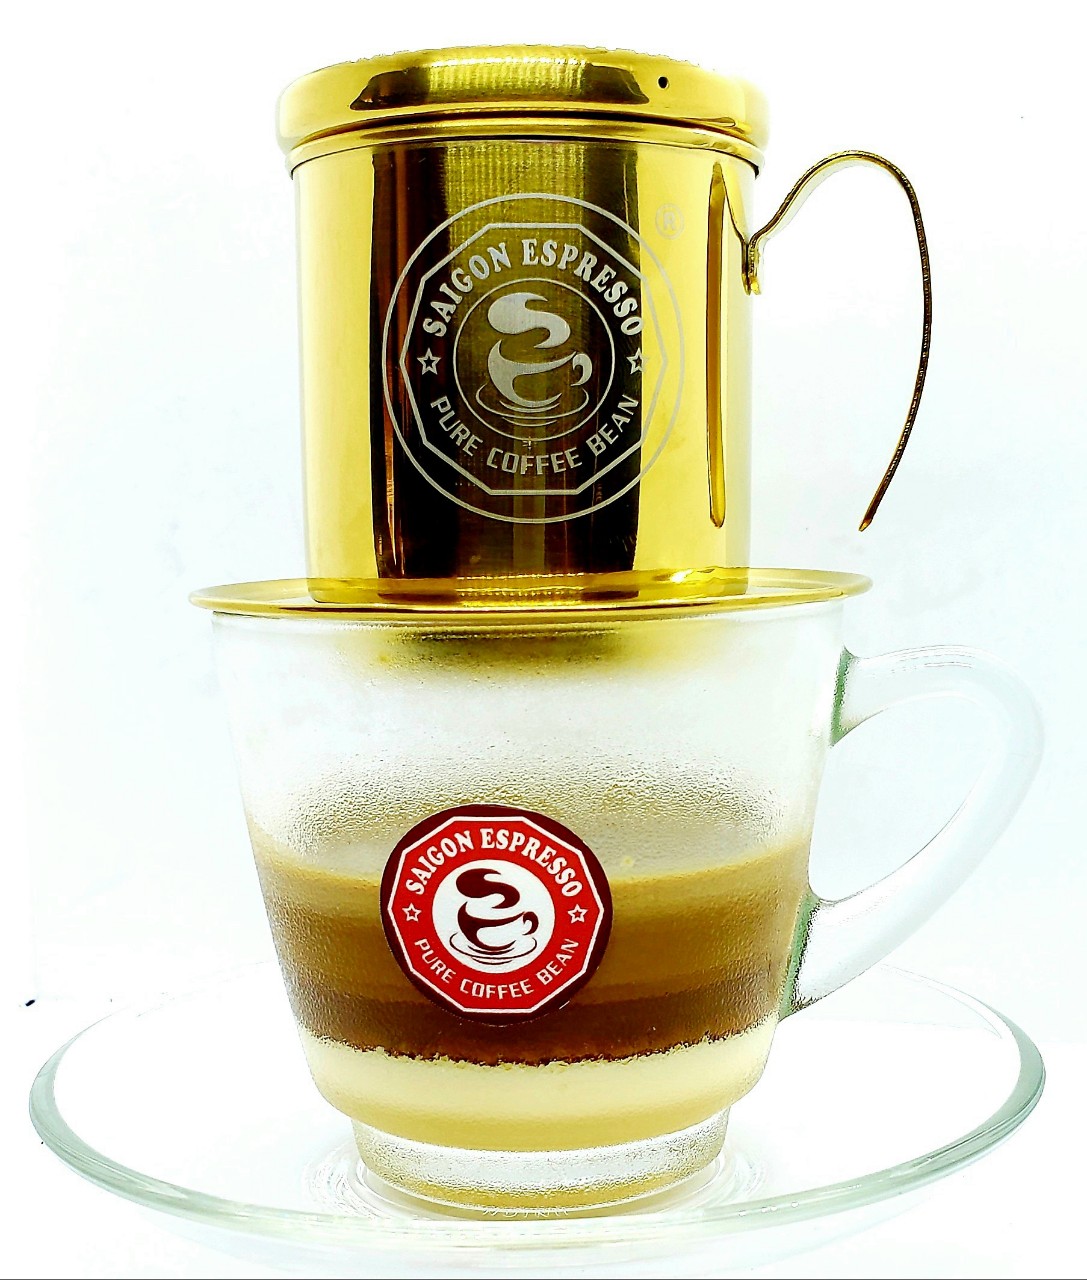 Cà phê hạt/bột nguyên chất Saigon Phin – Rang bơ. (500g/Bịch). Café không hương liệu, Không độn đậu, bắp, Không chất bảo quản. Vị đậm đà, thơm béo